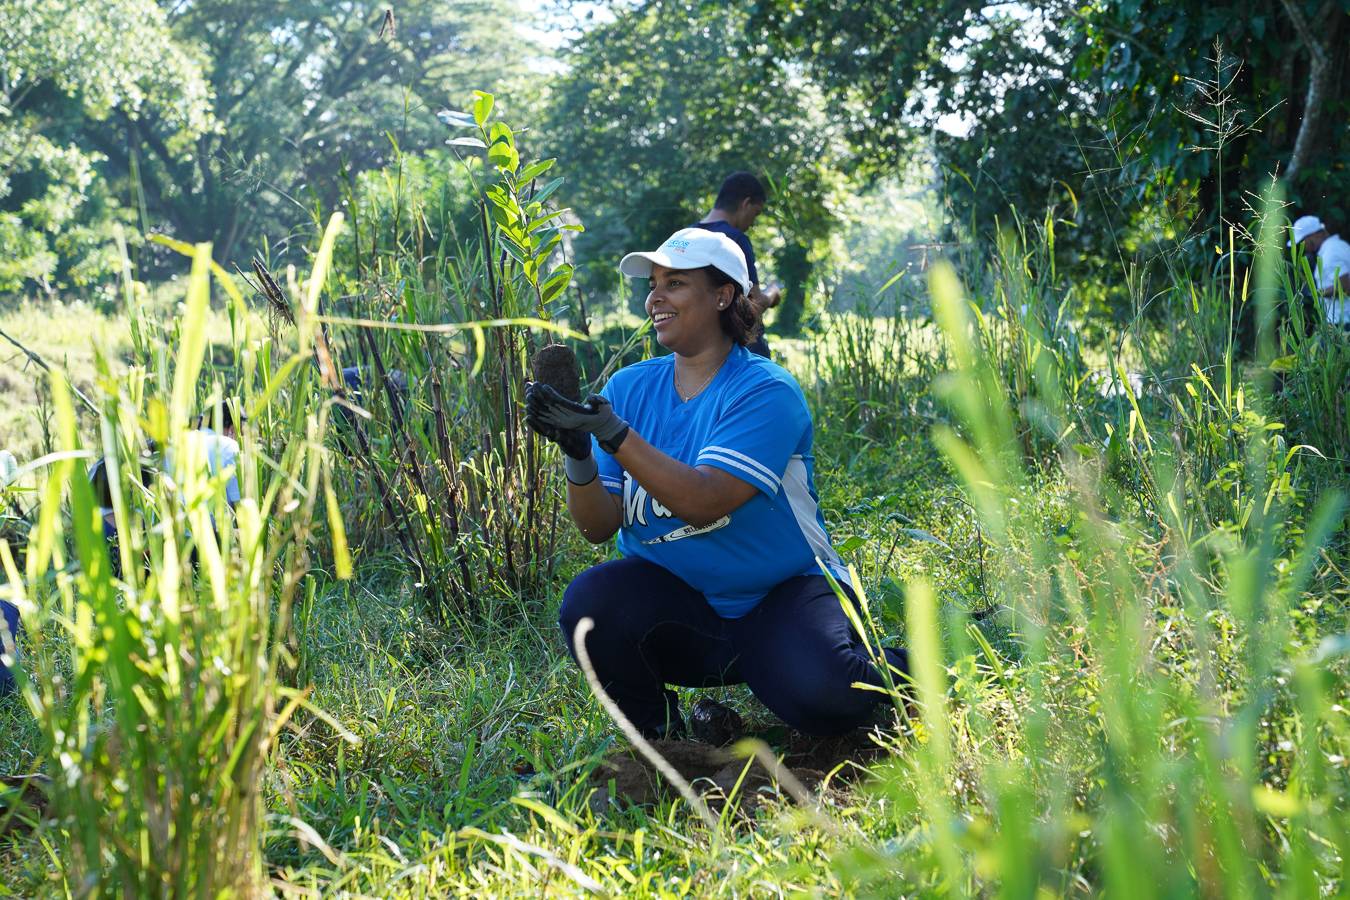 Voluntariado Bancentraliano realiza su 17ª jornada de reforestación en colaboración con el Medioambiente